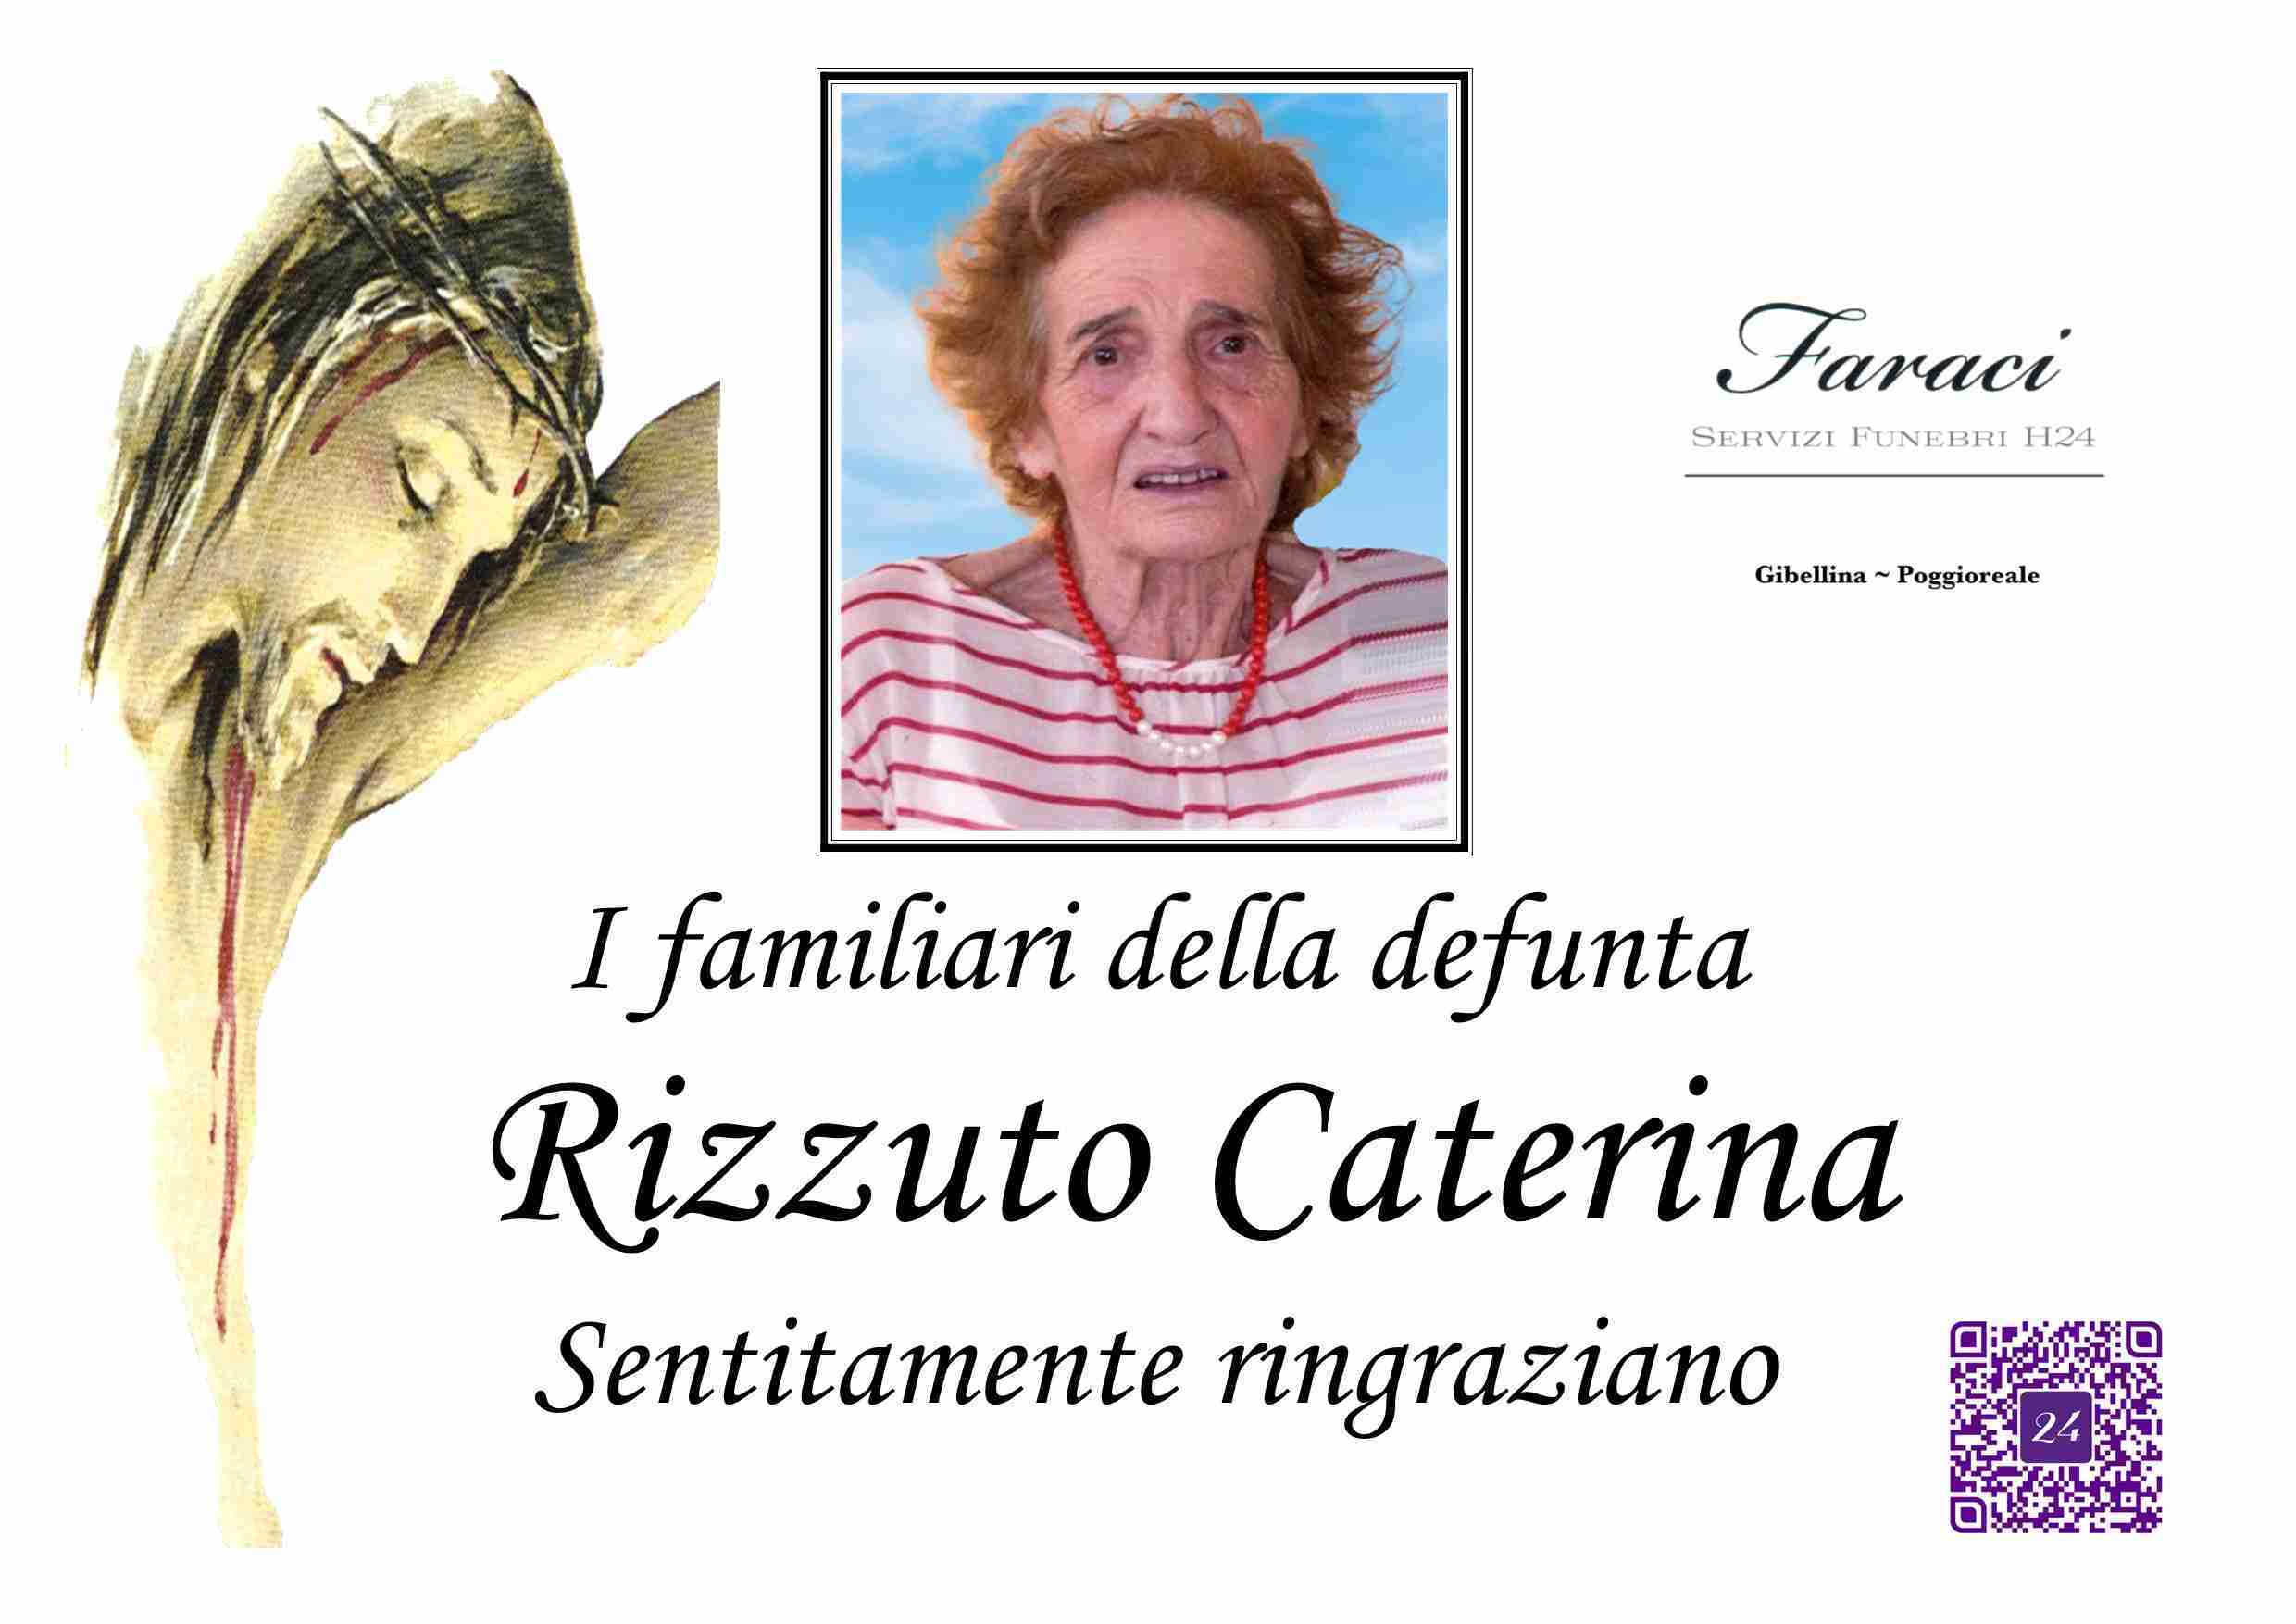 Caterina Rizzuto